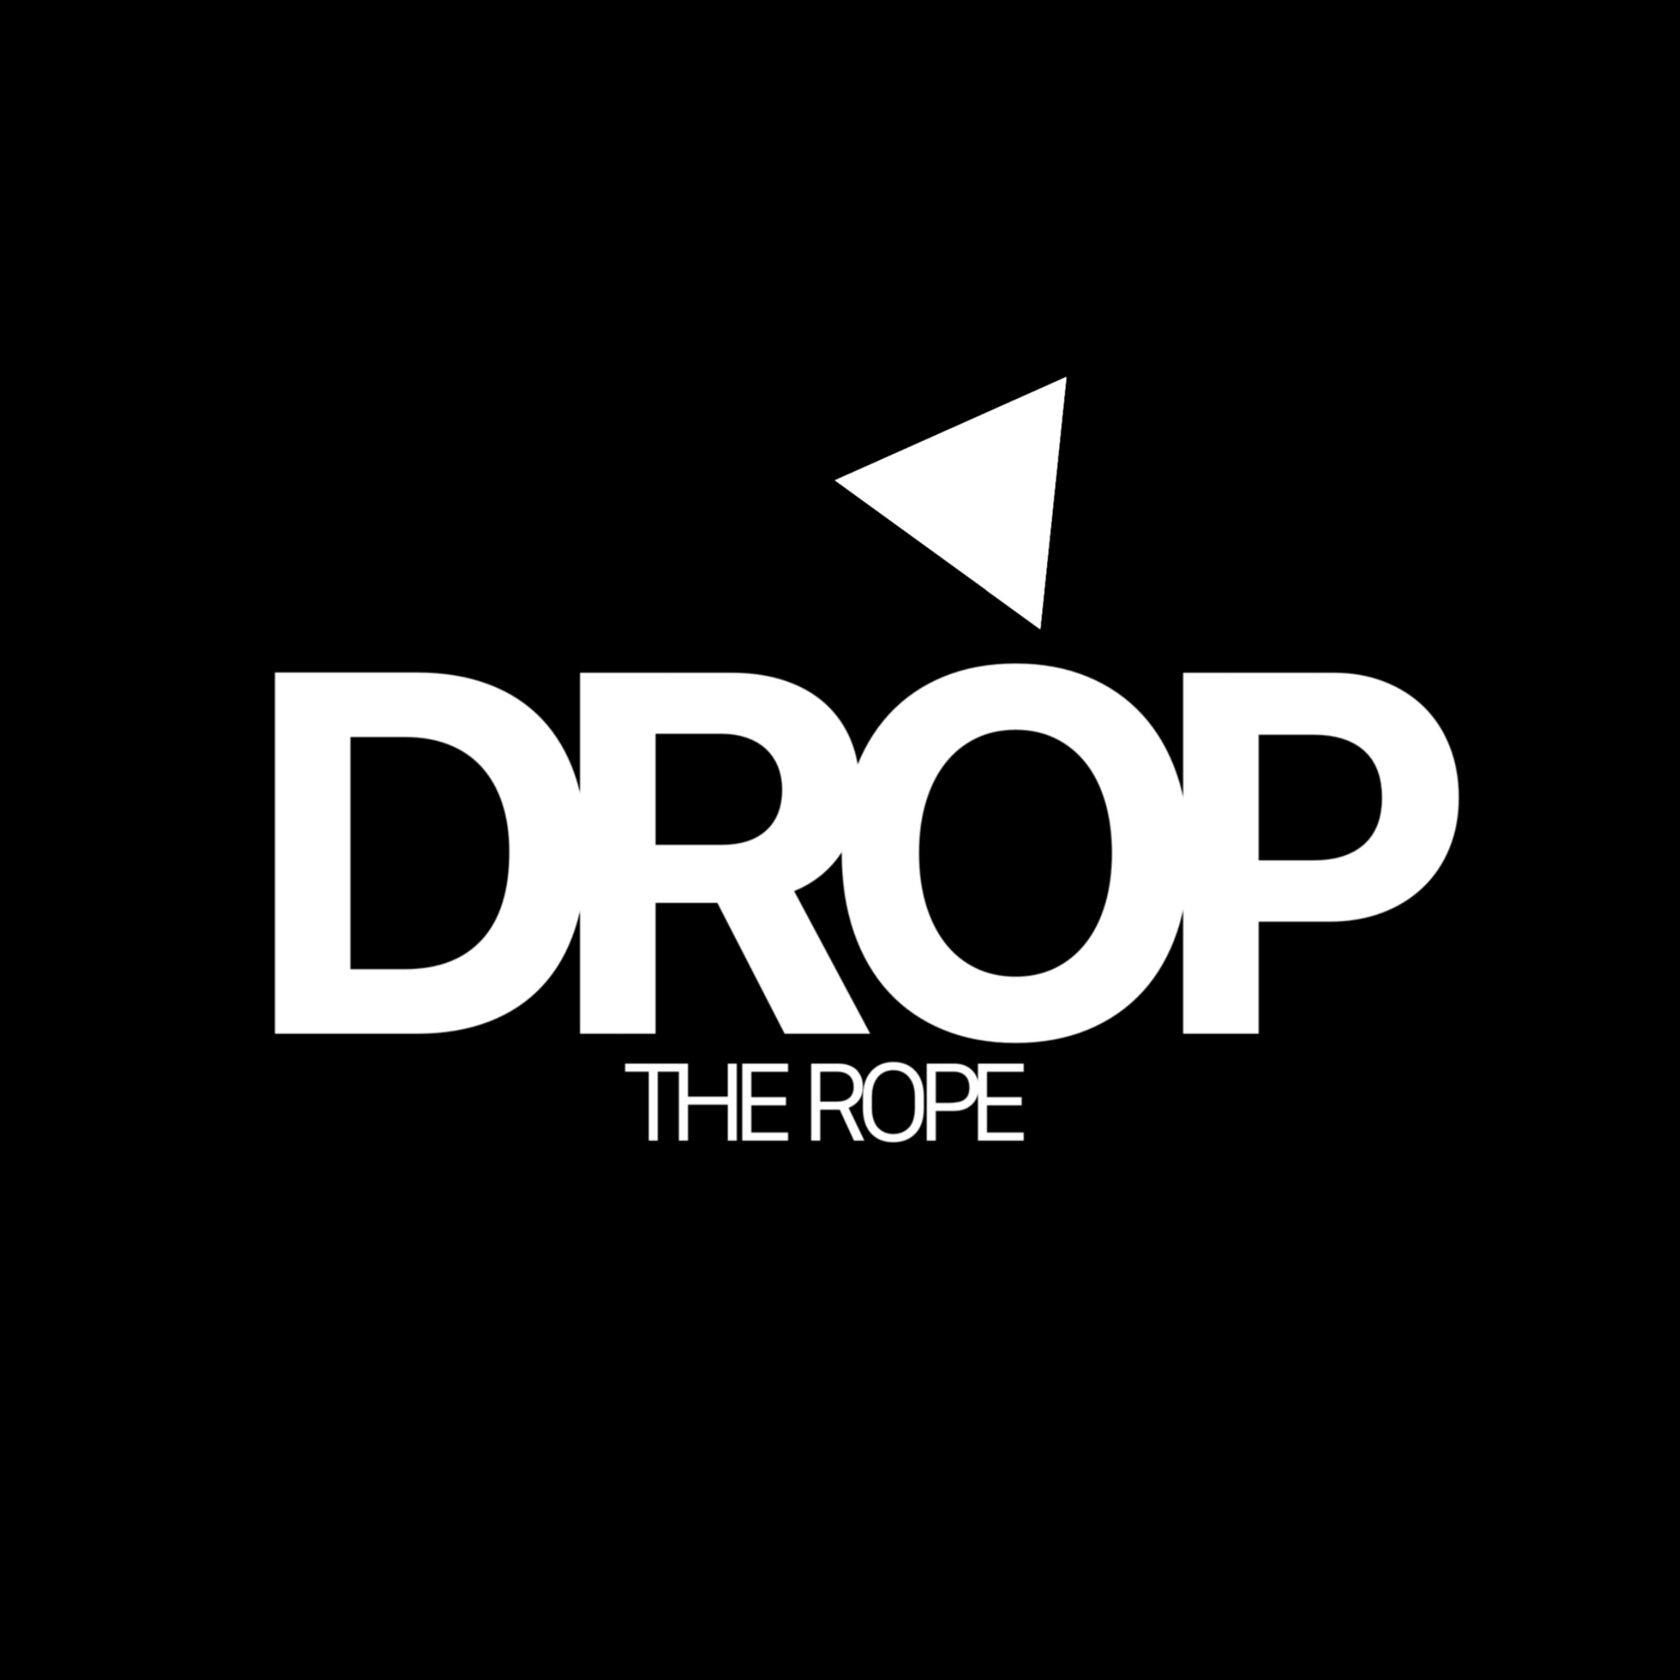 DropSpot